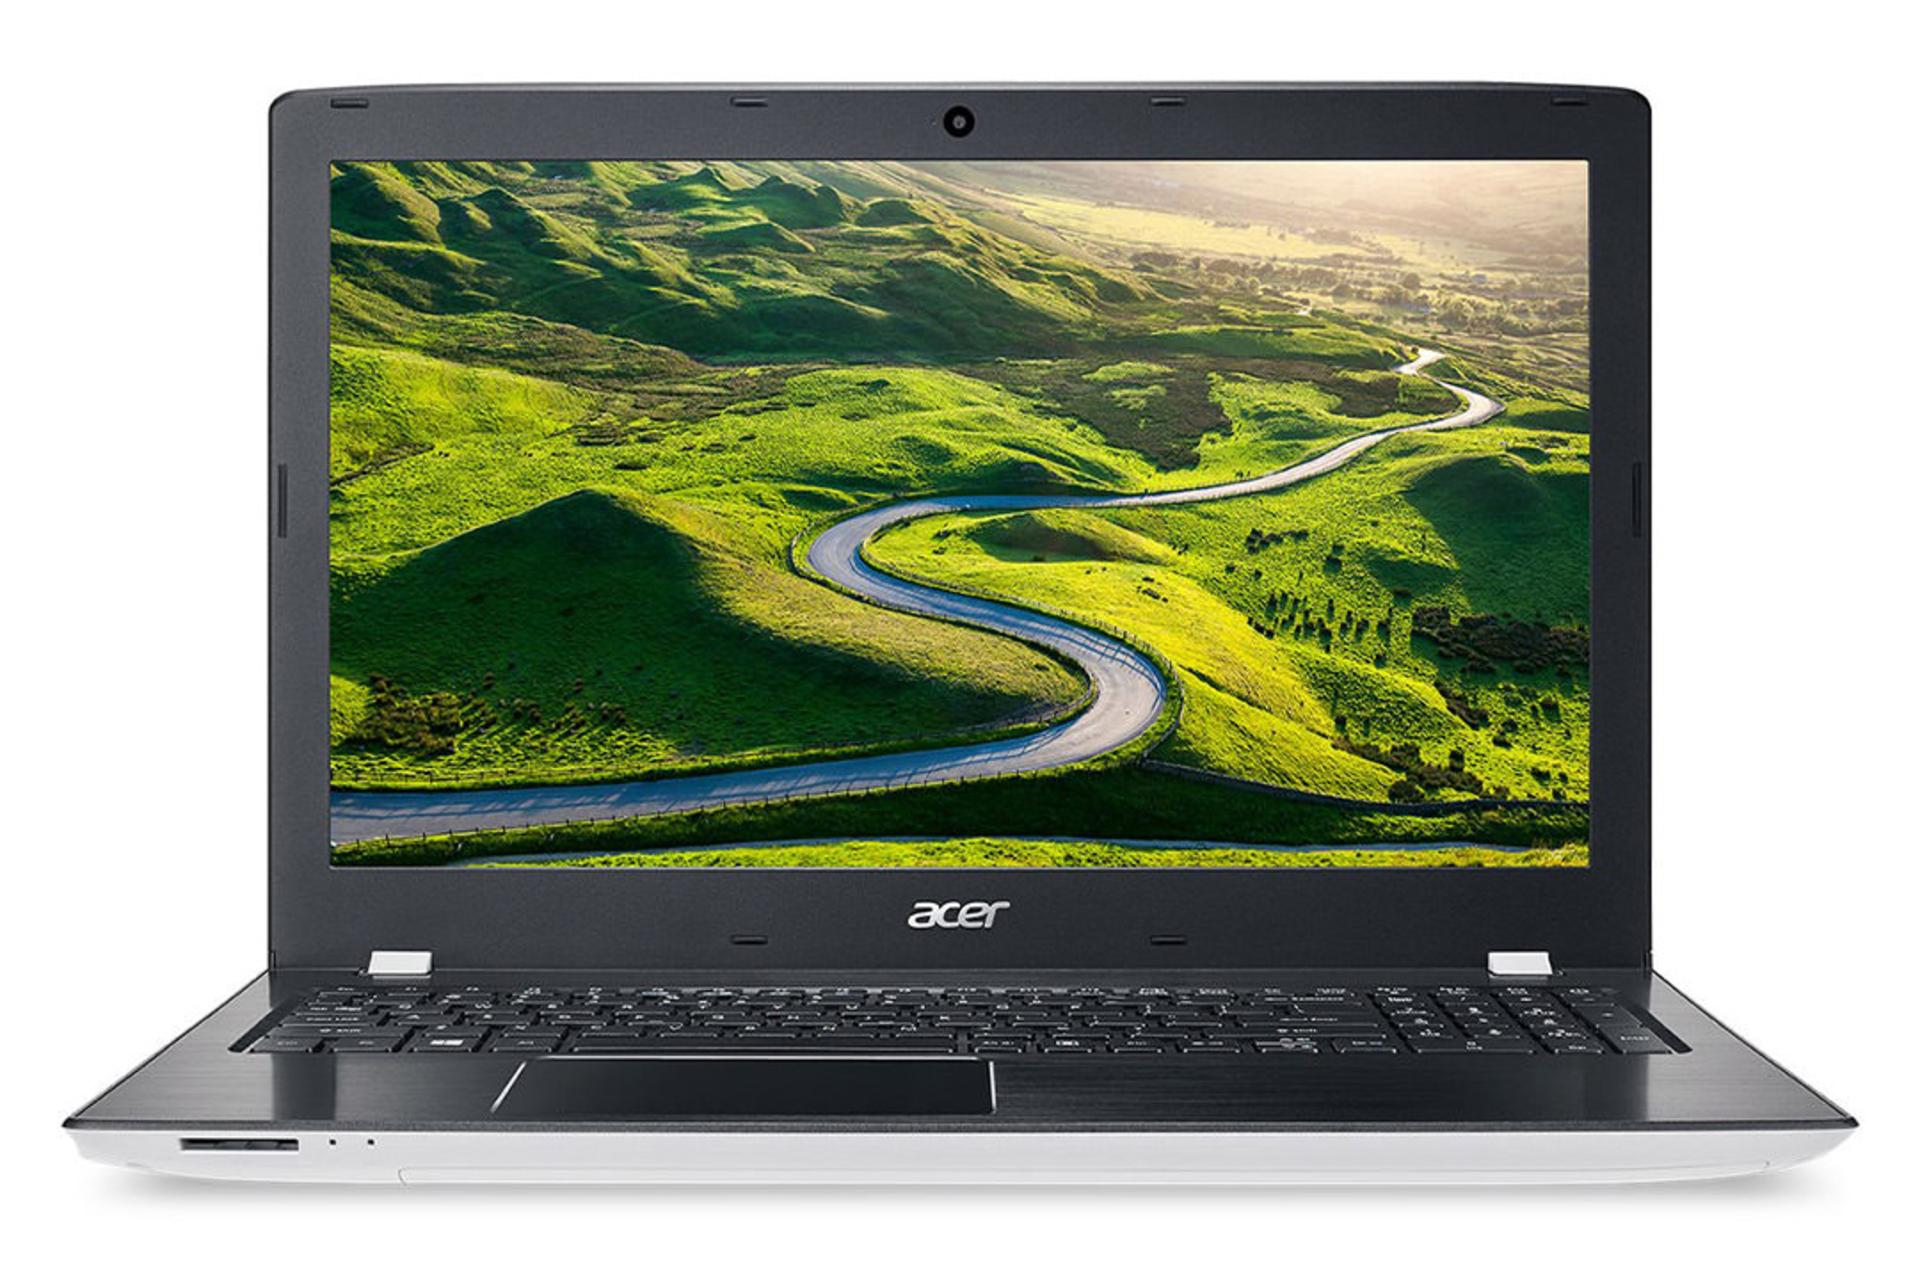 لپ تاپ اسپایر E5-575g-73WP ایسر / Acer Aspire E5-575g-73WP